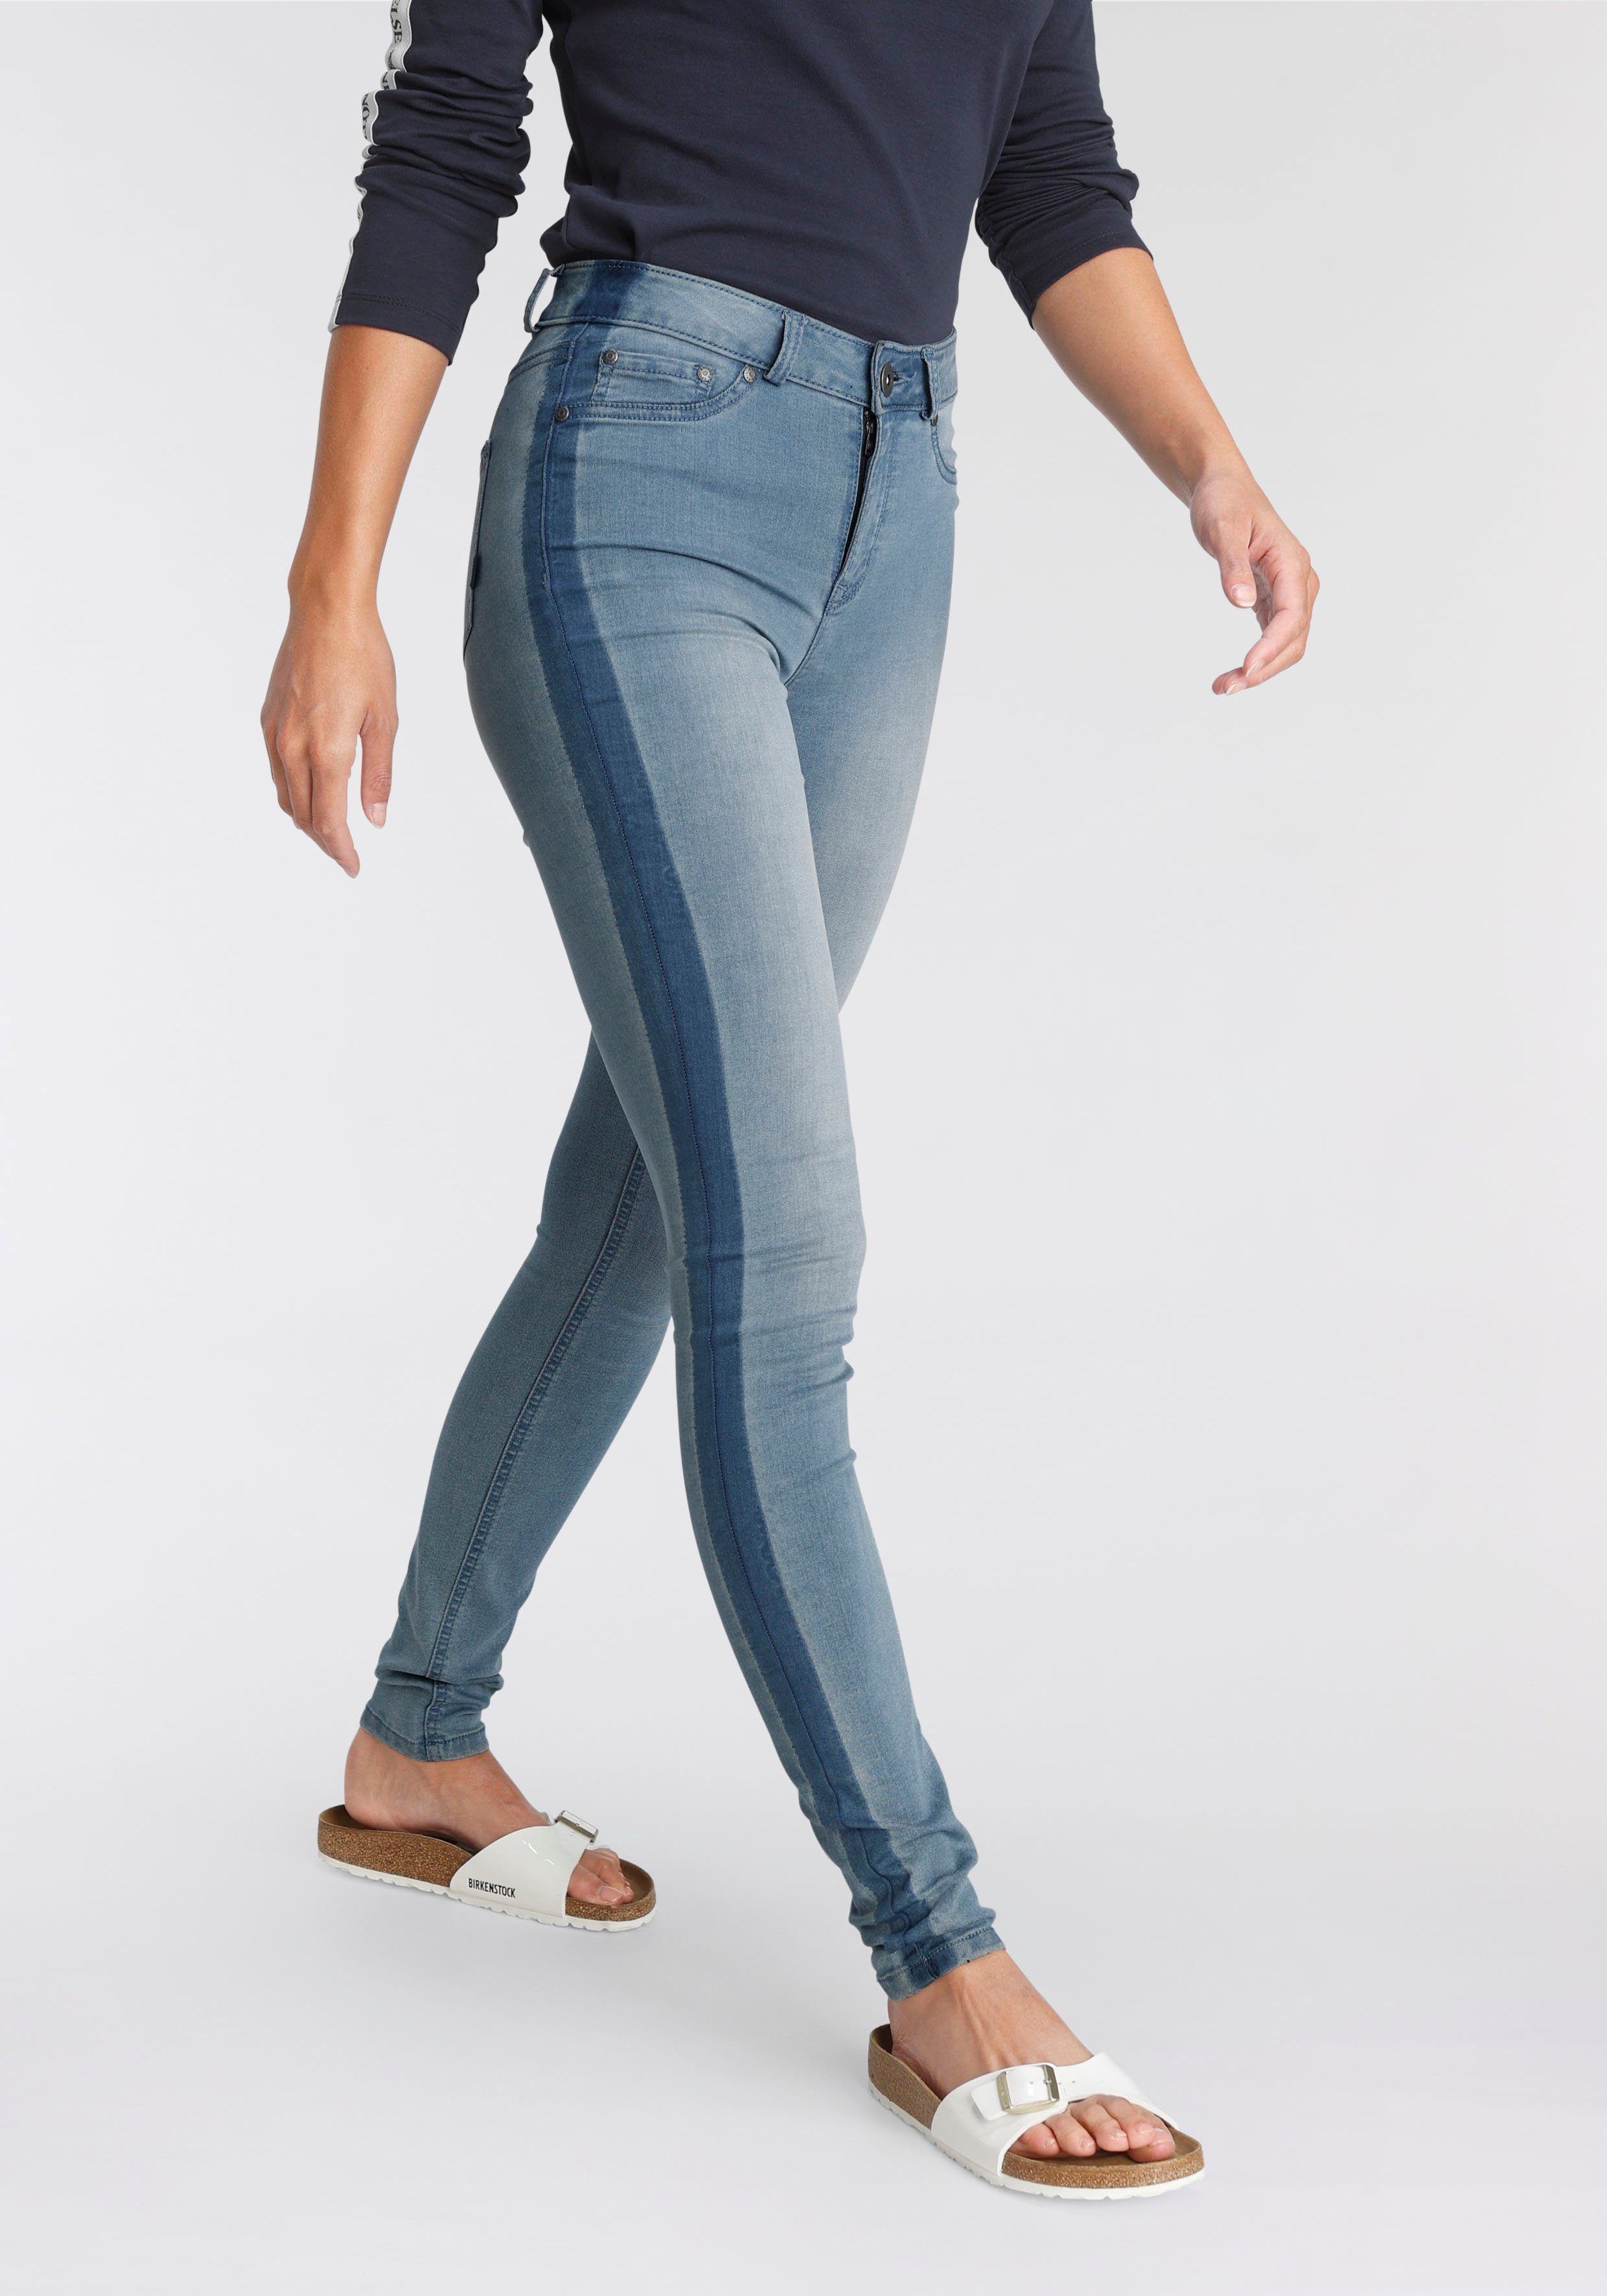 Arizona Skinny-fit-Jeans Ultra Stretch High Waist mit seitlichem Streifen blue-used | Stretchjeans